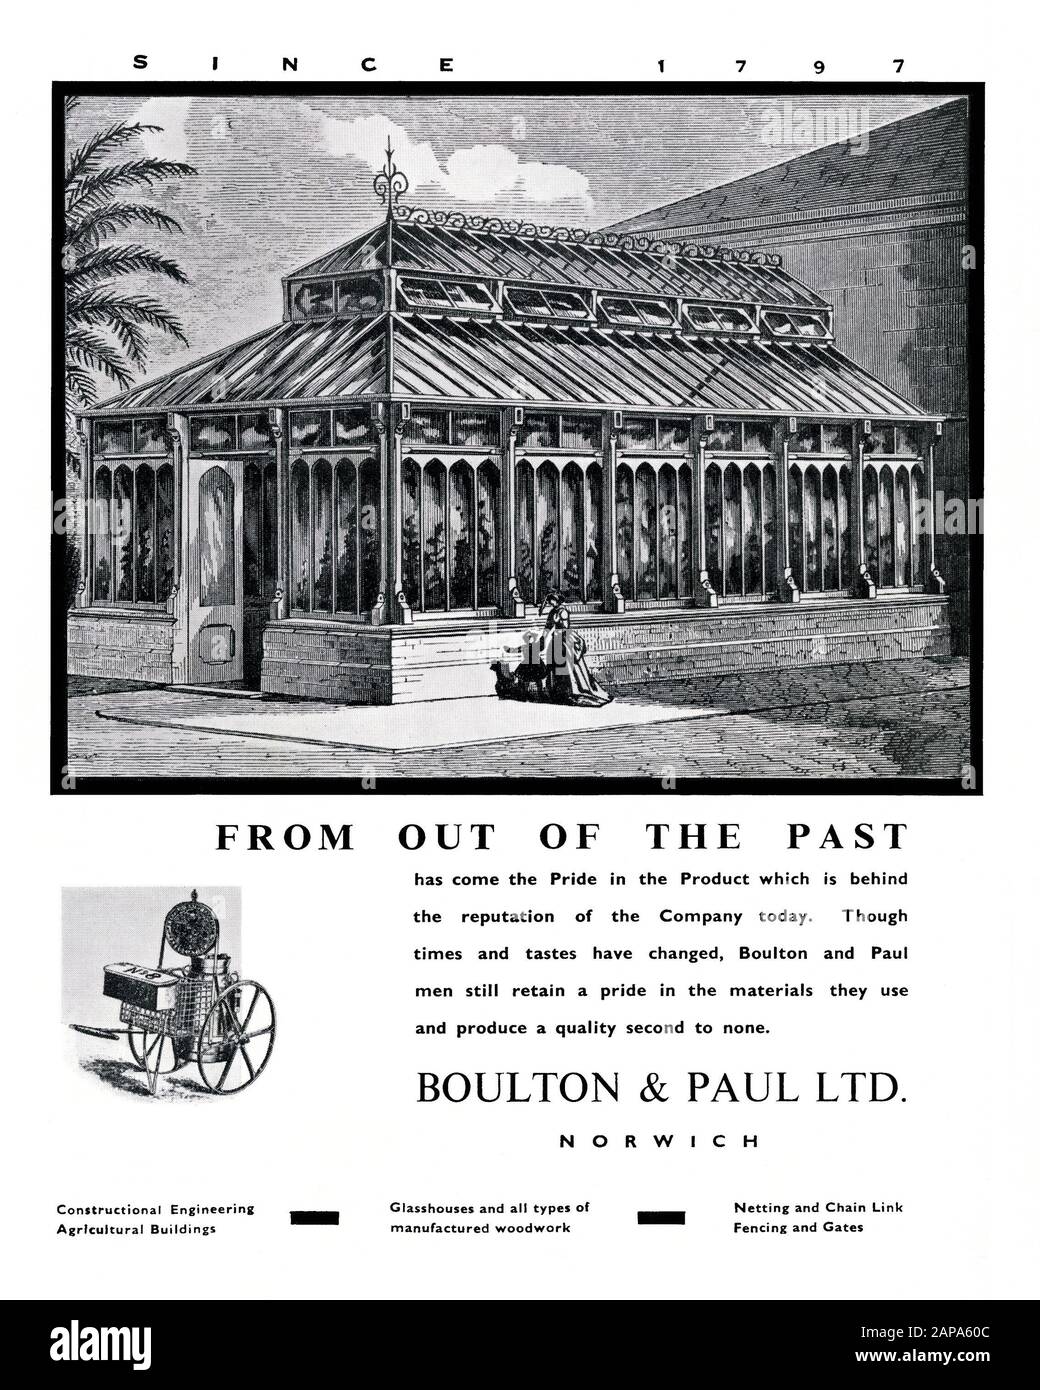 Un anuncio de 1951 para Boulton & Paul Ltd, una empresa de construcción e ingeniería con sede en Norwich, Norfolk, Inglaterra, Reino Unido. Esto apareció en una revista que marcó el Festival de Gran Bretaña celebraciones en Norwich ese año. La ilustración presenta un gran invernadero victoriano (invernadero). A principios de 1900 Boulton & Paul se había convertido en una exitosa empresa de fabricación. Durante la Segunda Guerra Mundial fue un importante productor de edificios prefabricados, redes de alambre y fabricación de piezas de aviones. Boulton & Paul produjo la mayor parte del marco de acero para el avión R101 que voló por primera vez en 1929. Foto de stock